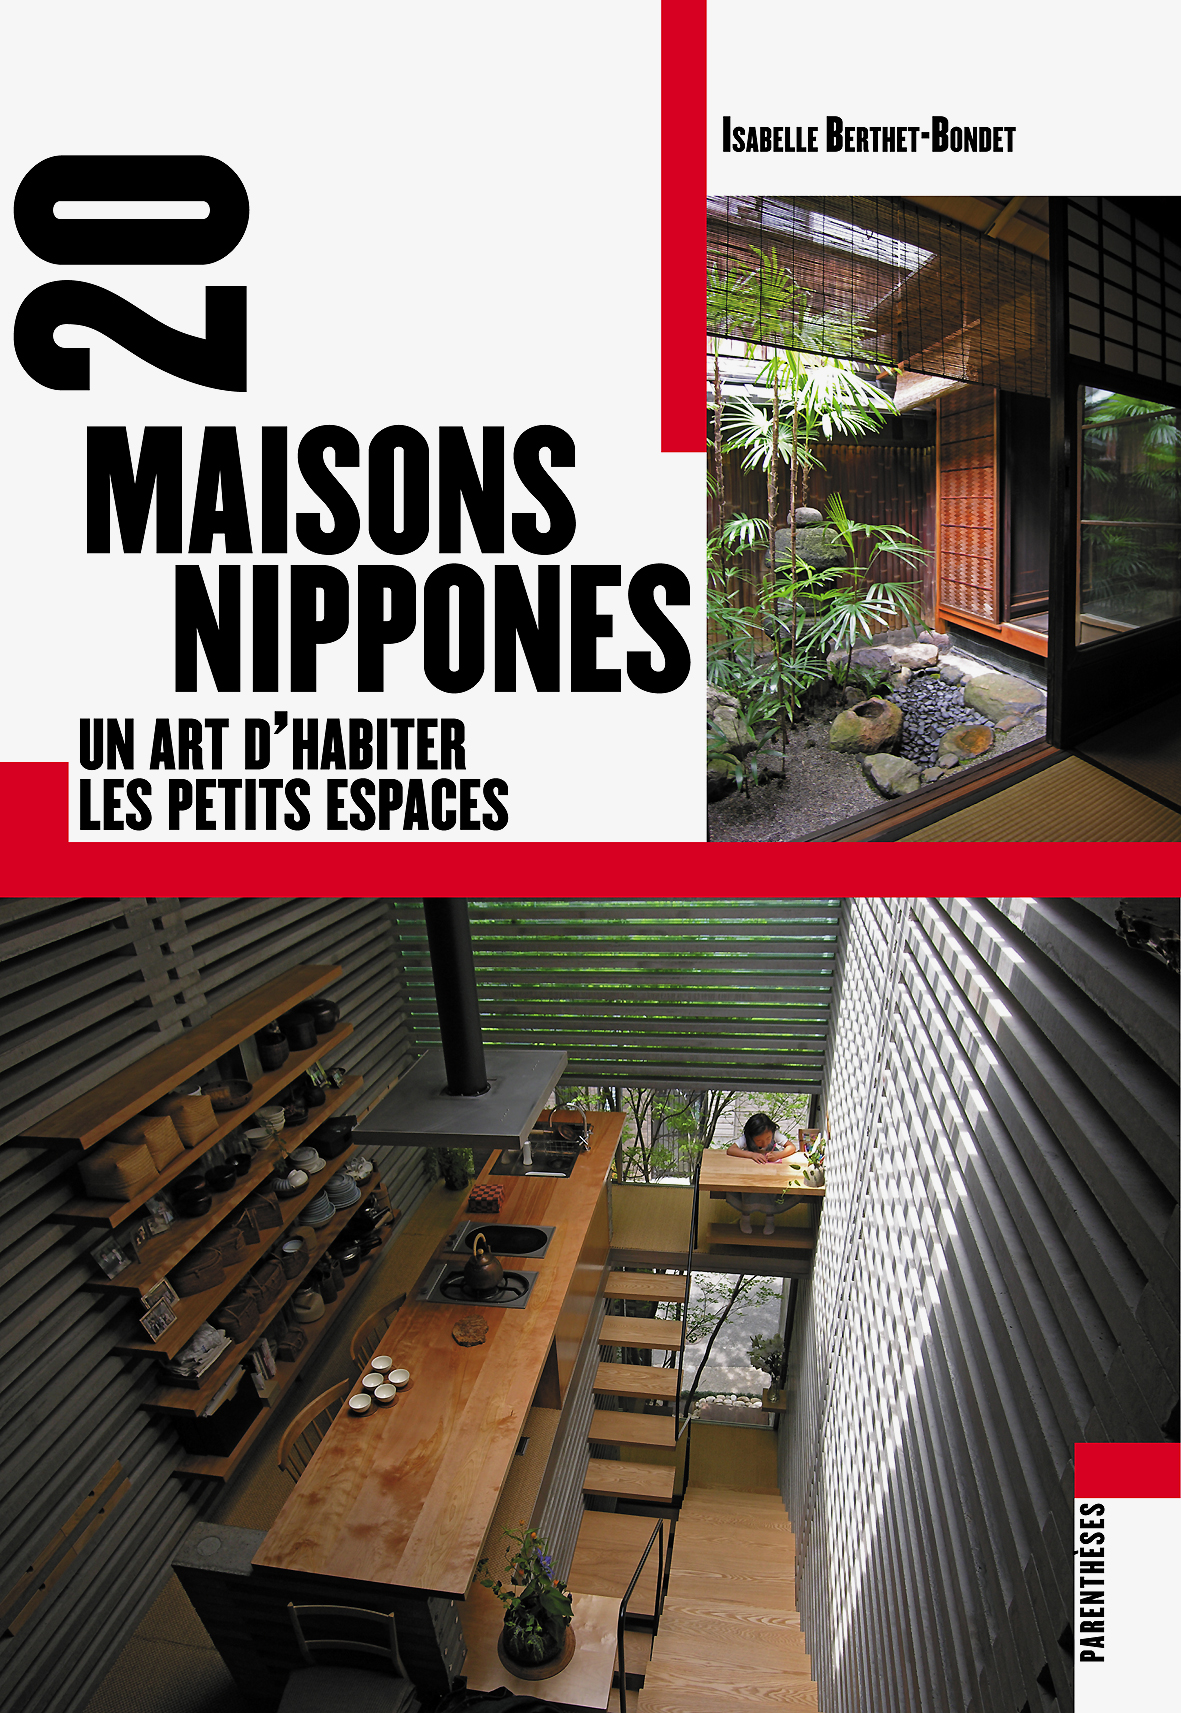 Vingt maisons nippones, un art d’habiter les petits espaces d’Isabelle Berthet-Bondet